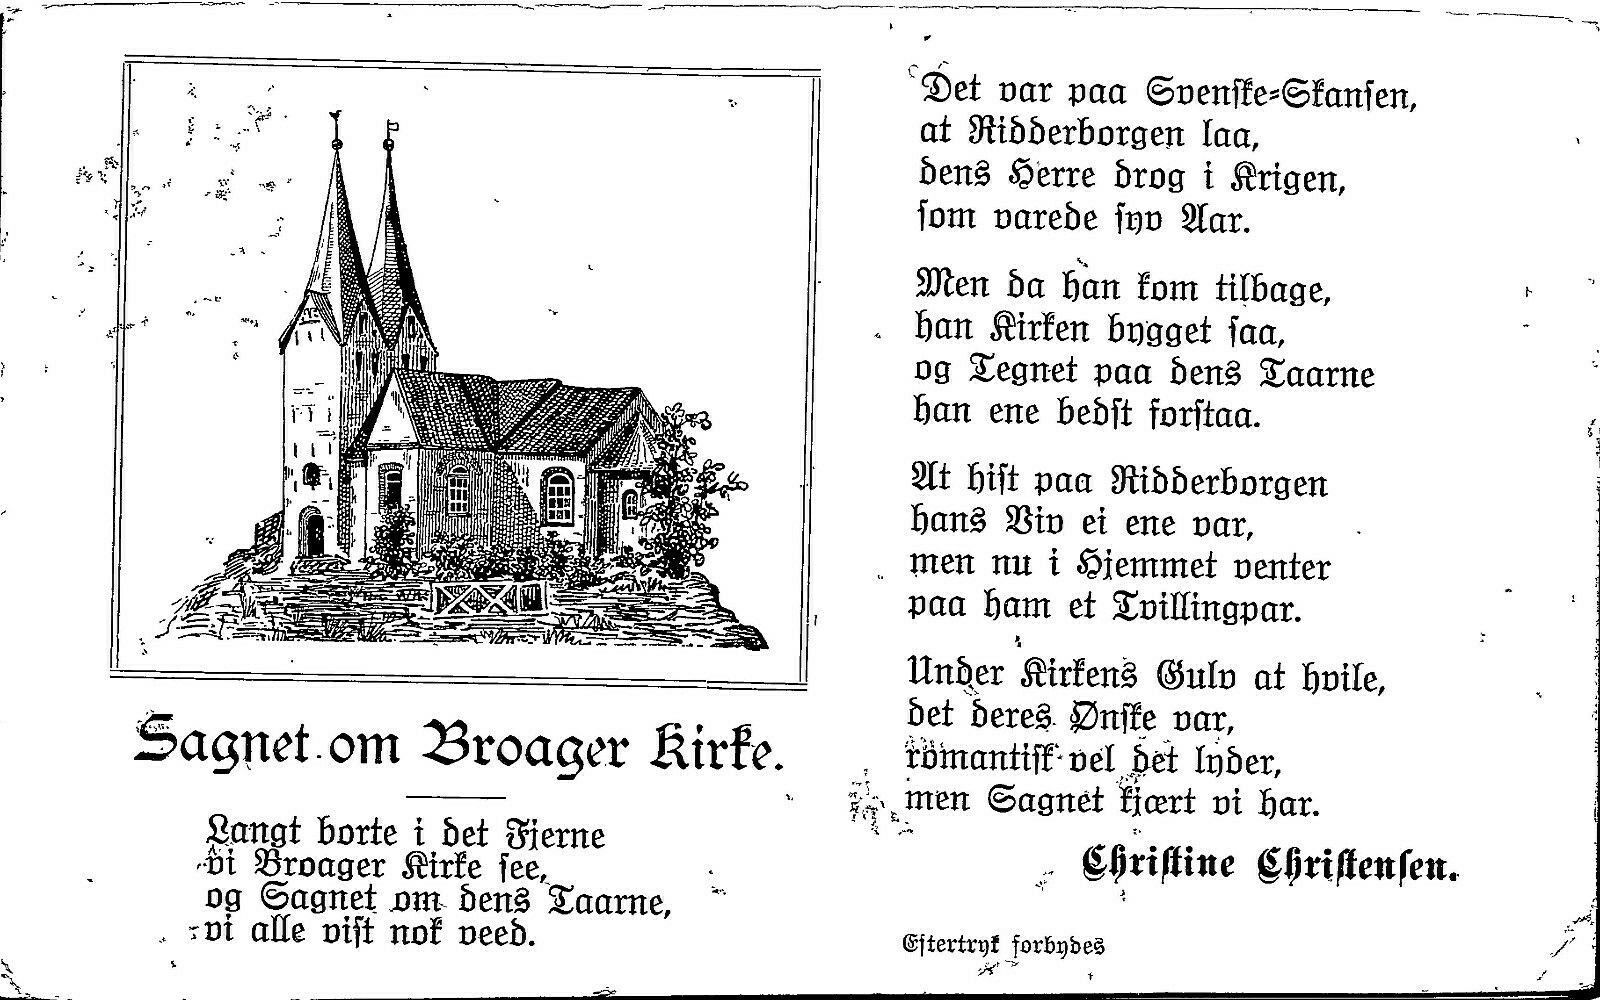 DENMARK pm 1913 SAGNET OM BROAGER KIRKE CHURCH Vitntage Postcard Pofttarte